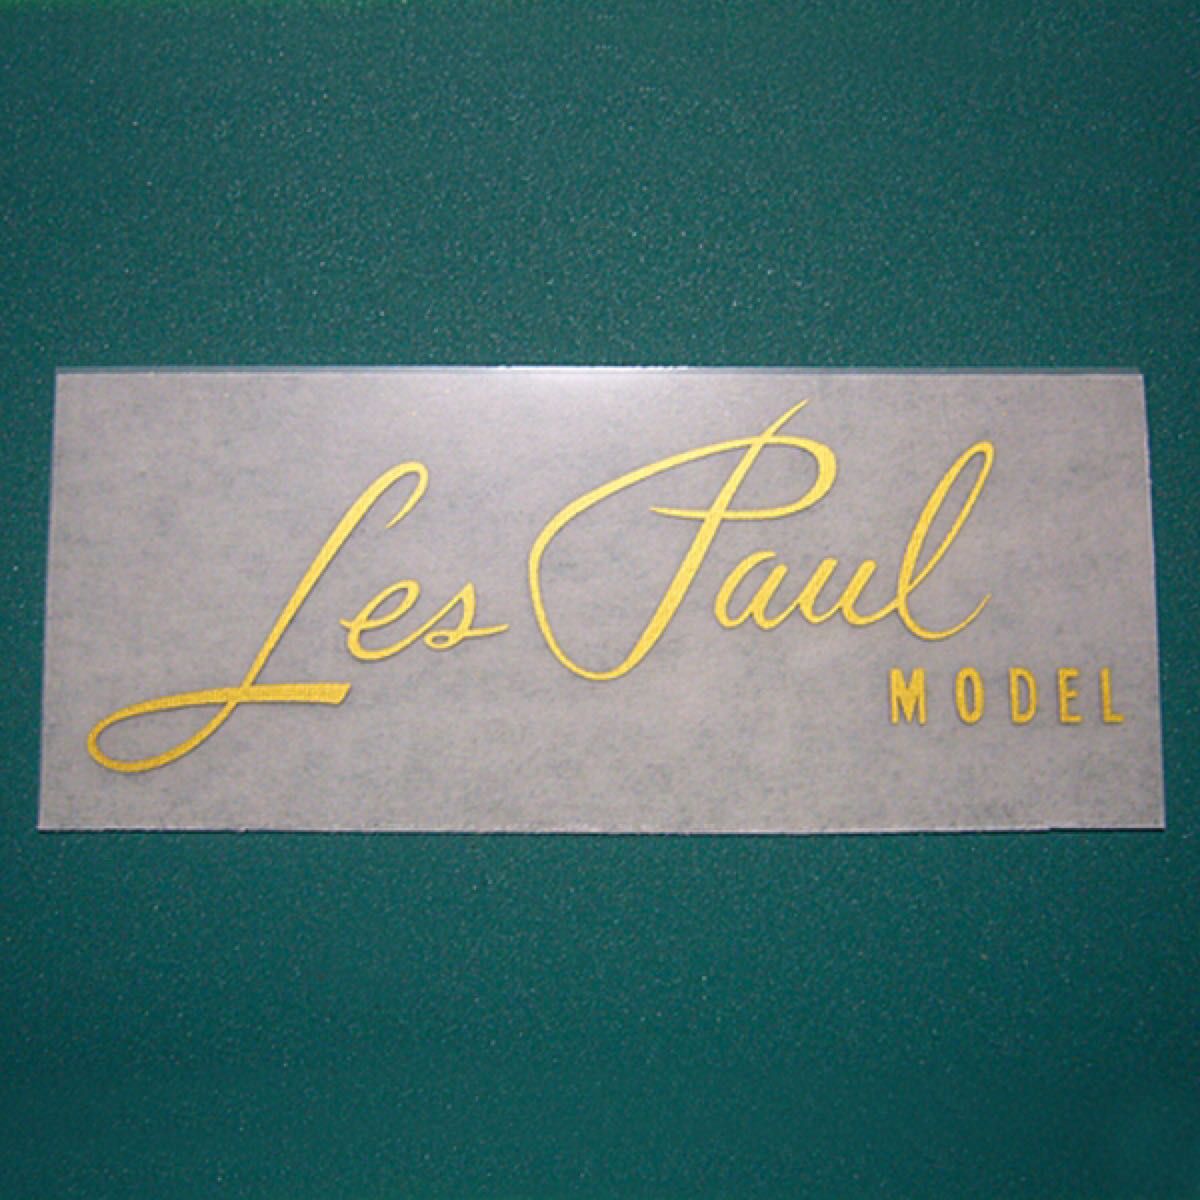 GIBSON Les Paul MODEL リペア用ロゴ インレタタイプ